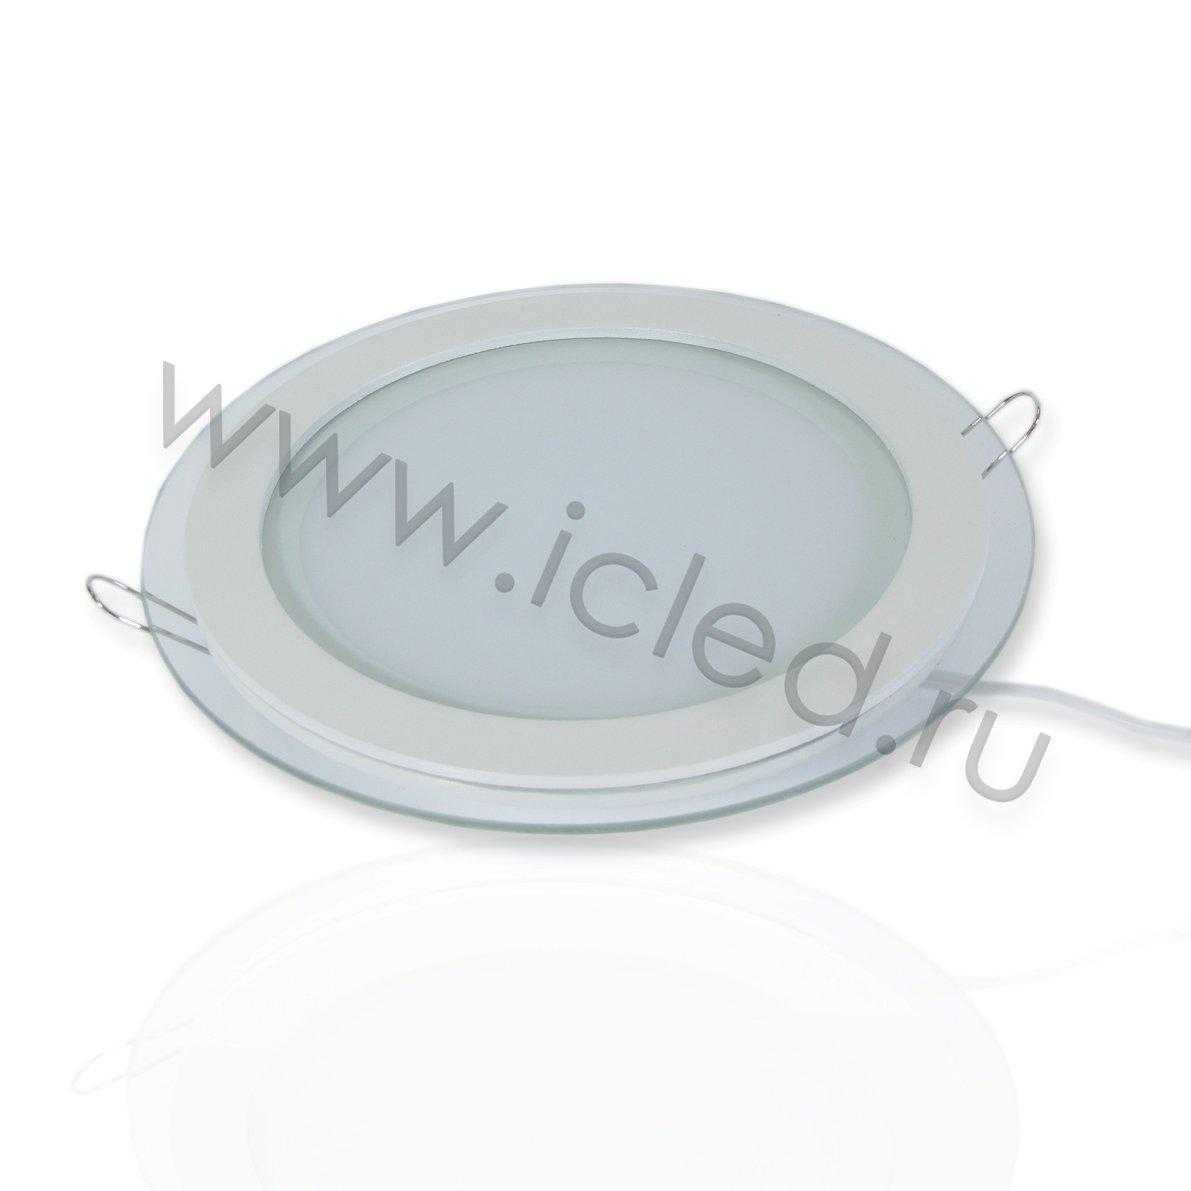 Светодиодные светильники Светодиодный светильник встраиваемый IC-RW D200 (15W, Warm White)